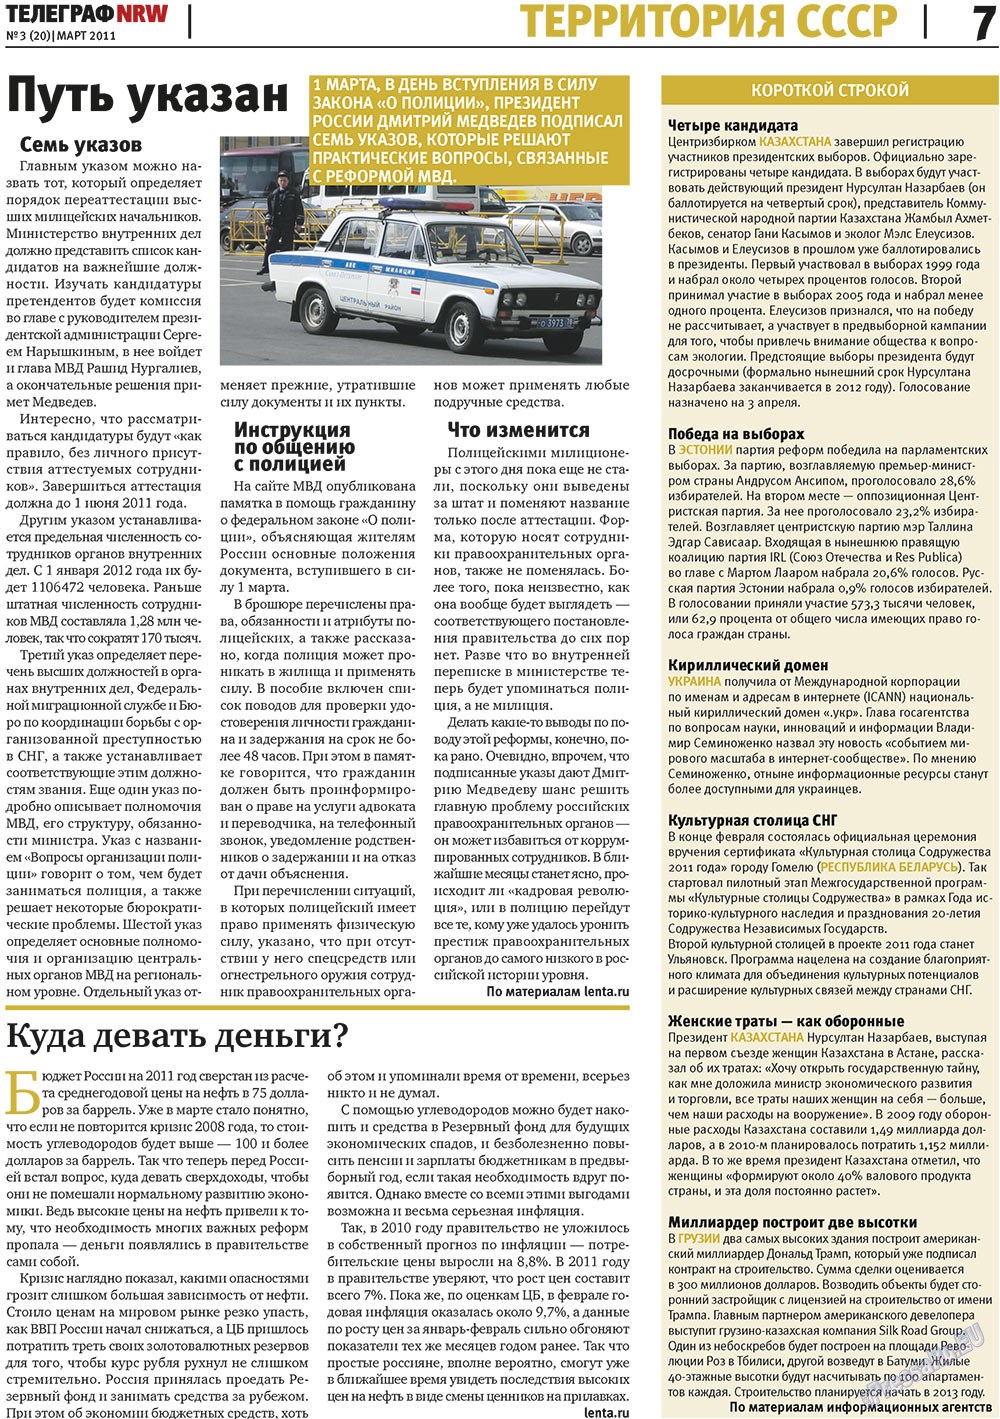 Телеграф NRW (газета). 2011 год, номер 3, стр. 7